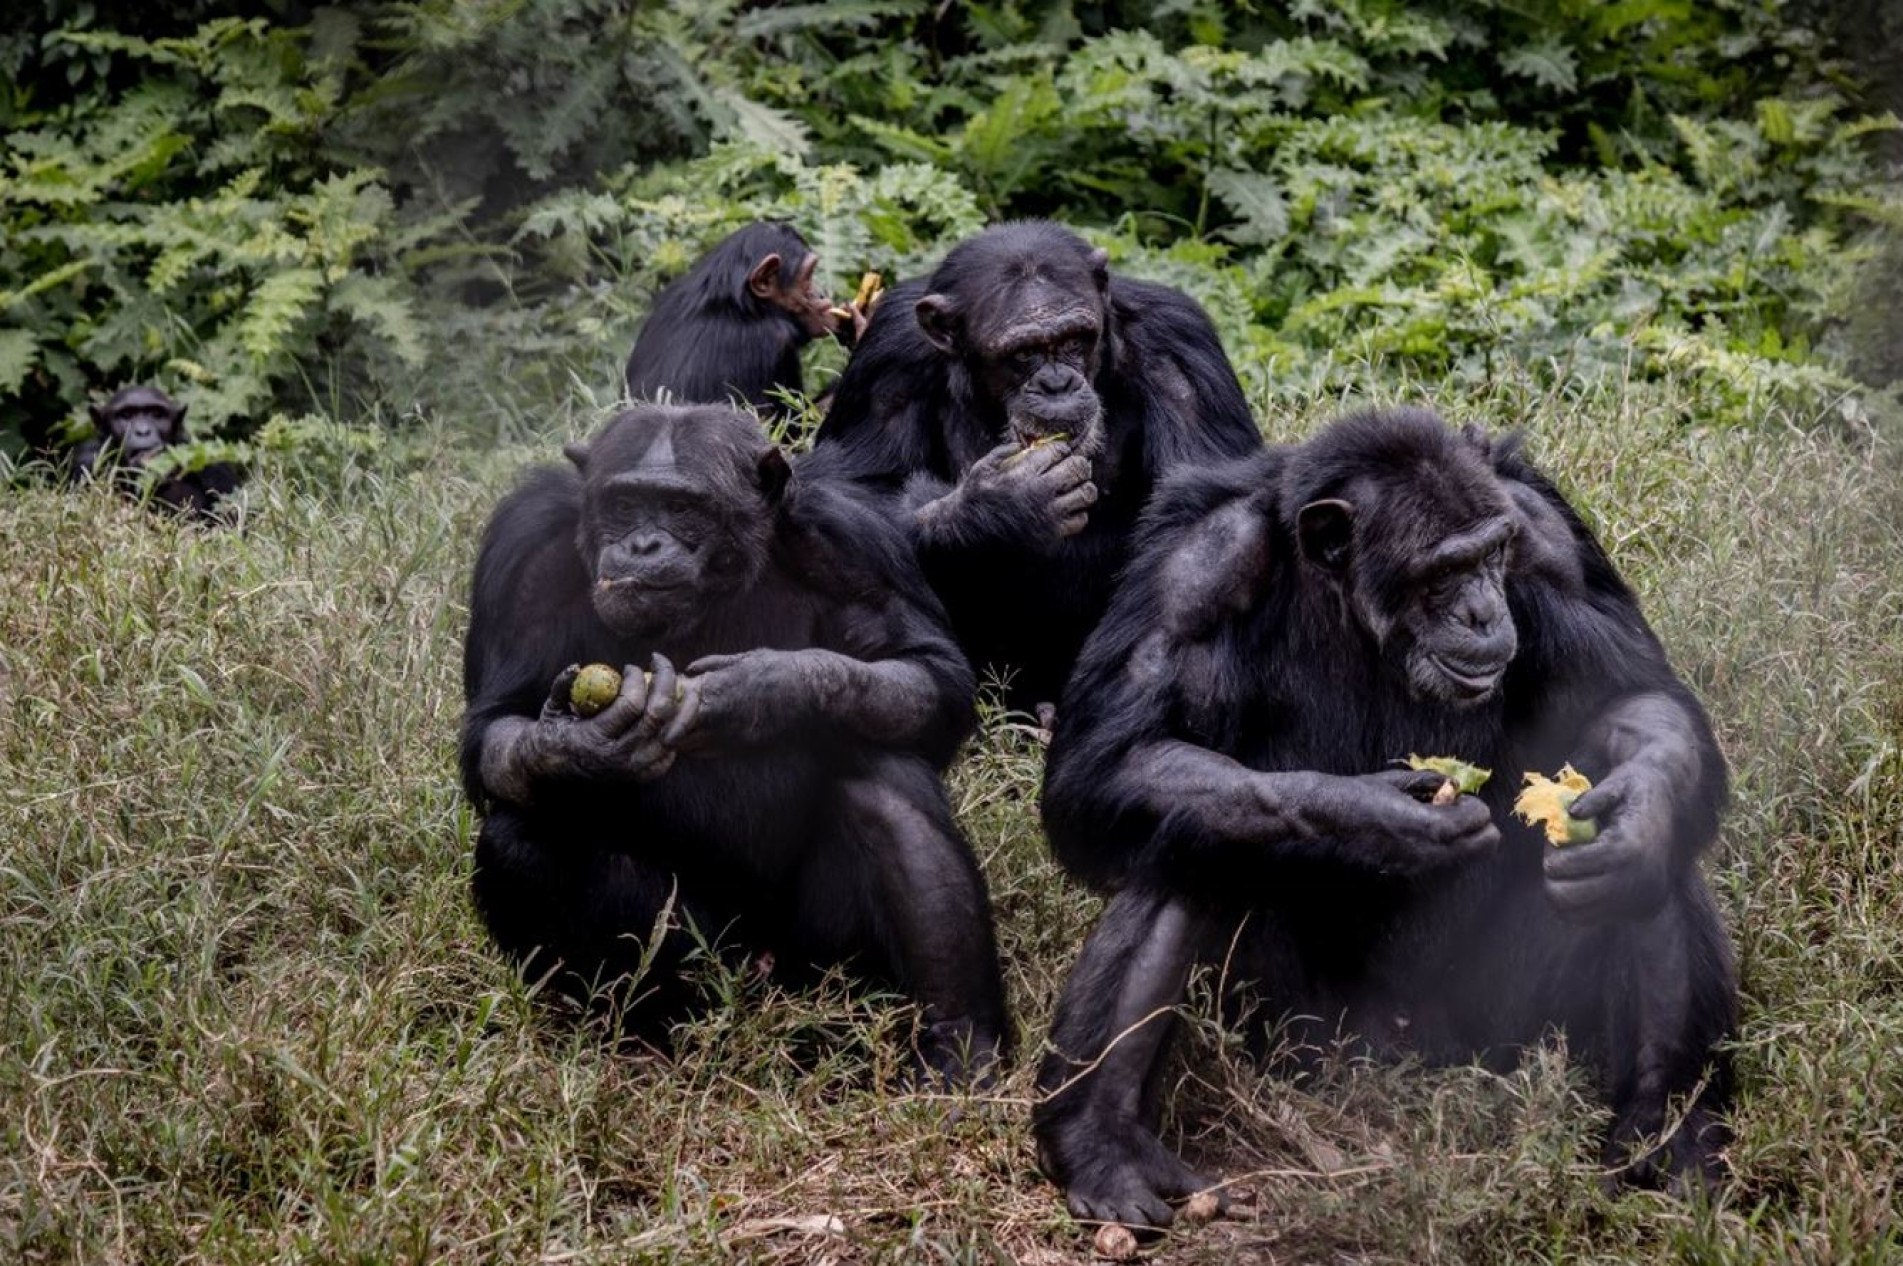 Centro acolhe chimpanzés, gorilas, bonobos e outros pequenos macacos órfãos ou resgatados da caça.